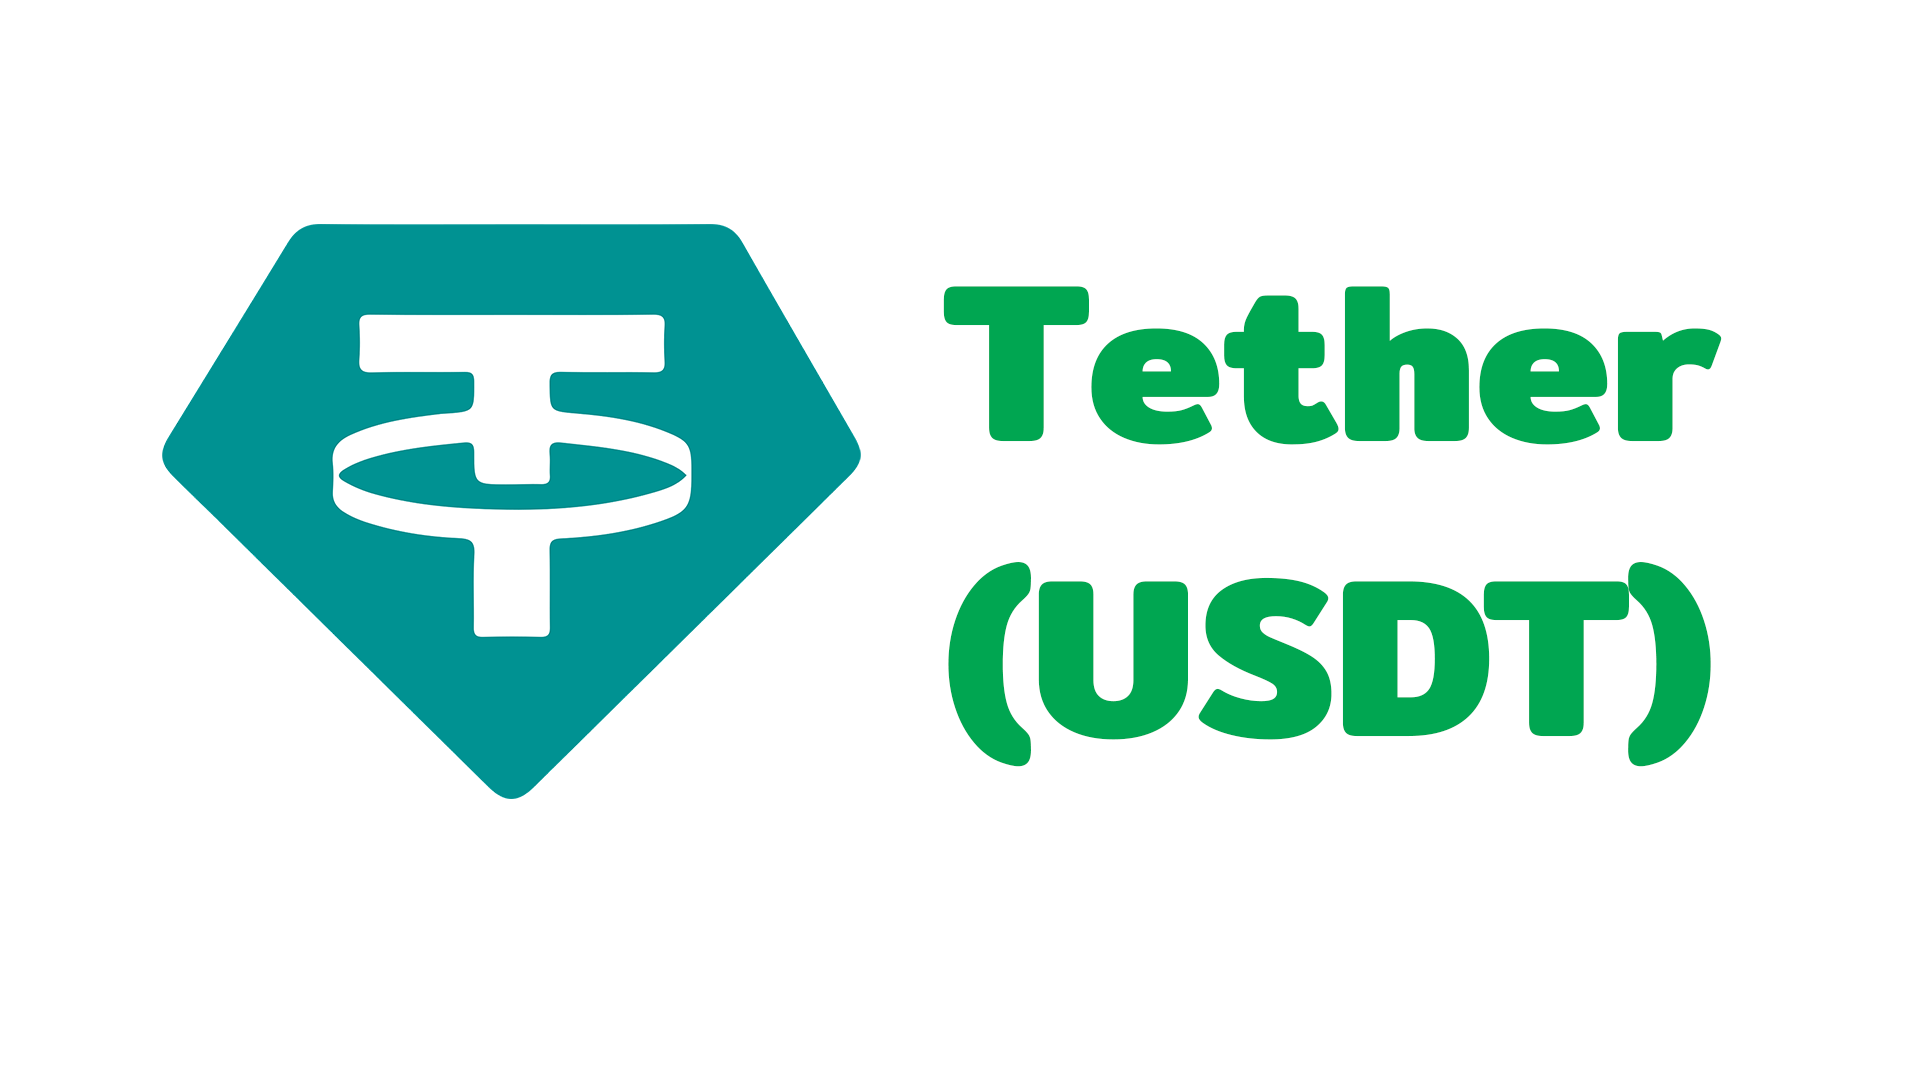 USDT ถูกถอนออกไปเป็นเงินกว่า 7,000 ล้านโทเค็น หลังจากการล่มสลายของ UST